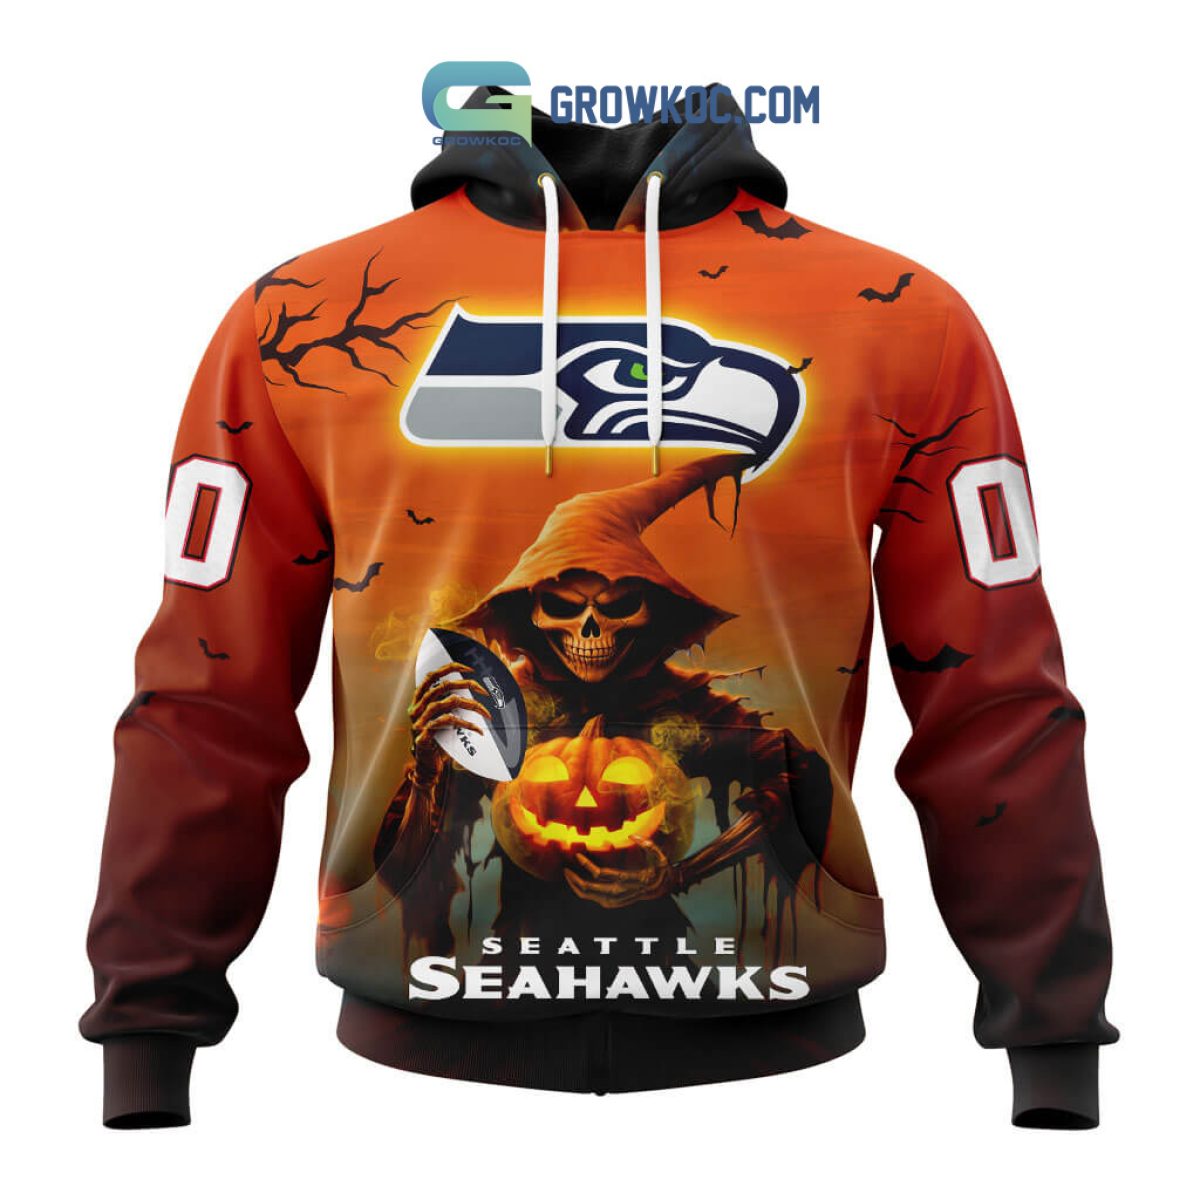 SEAHAWKS hockey jersey, Seattle Seahawks hockey jersey conc…